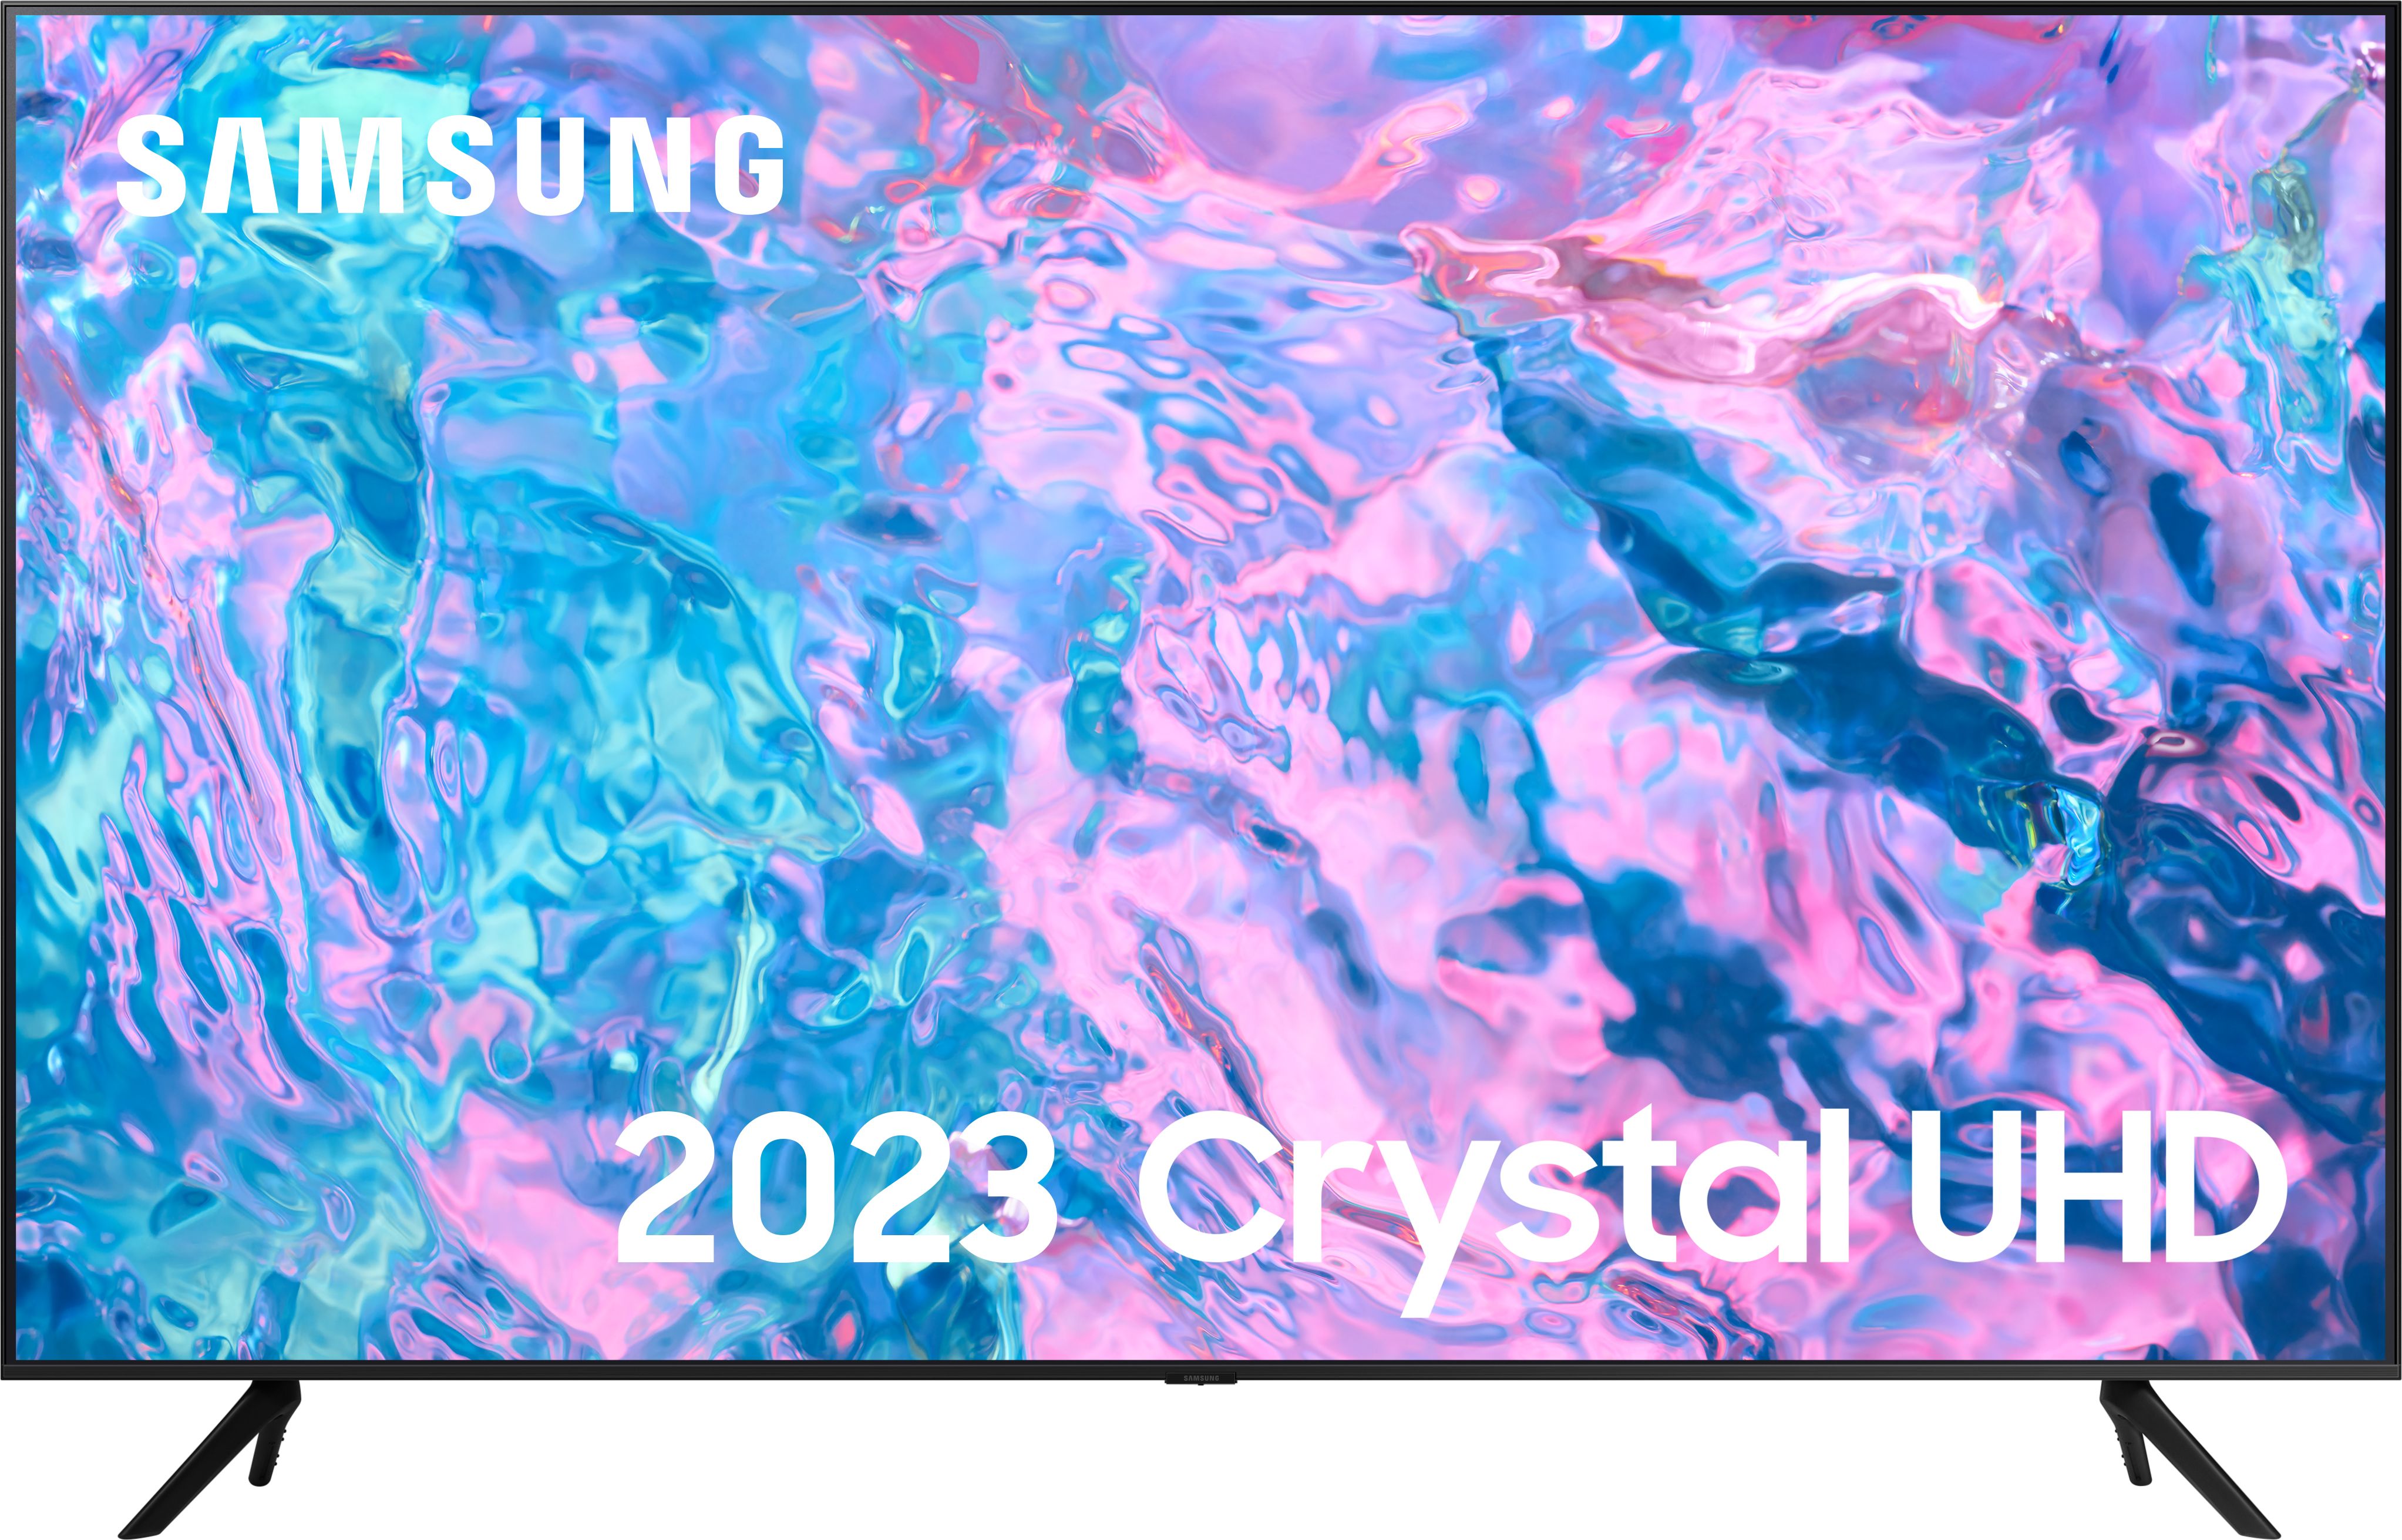 Samsung Series 7 CU7100 50